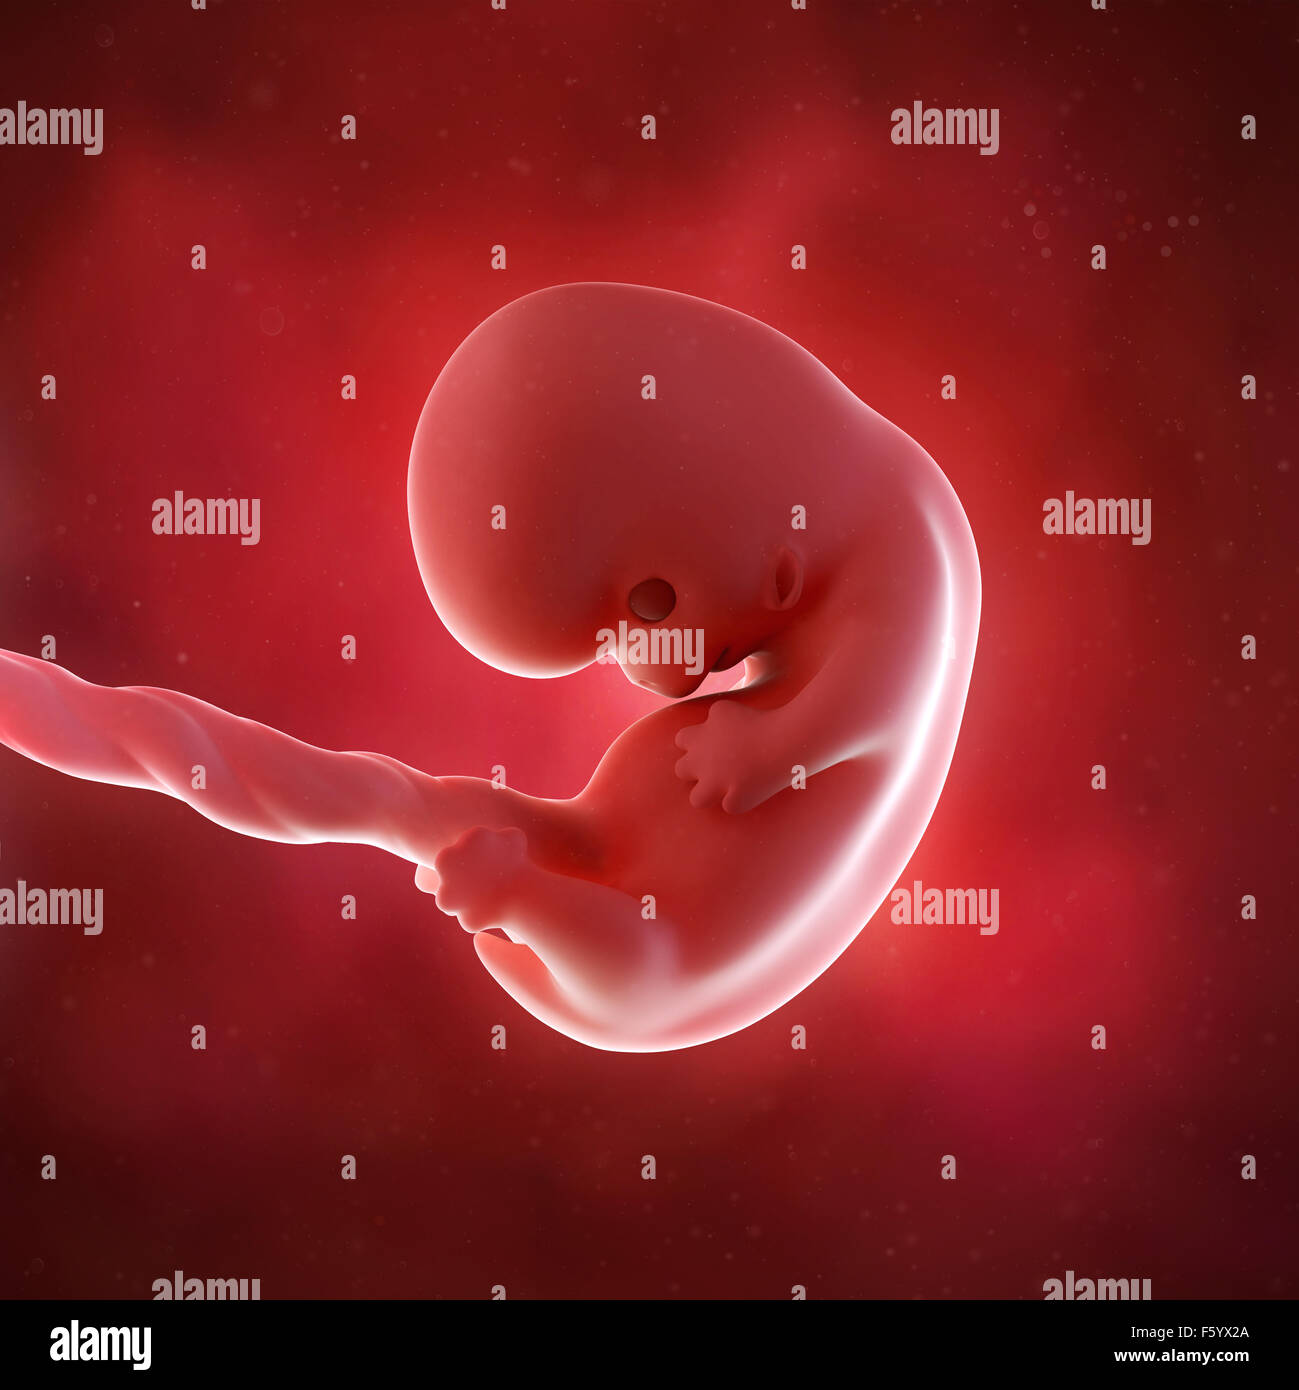 Précision médicale 3d illustration d'un foetus la semaine 8 Banque D'Images